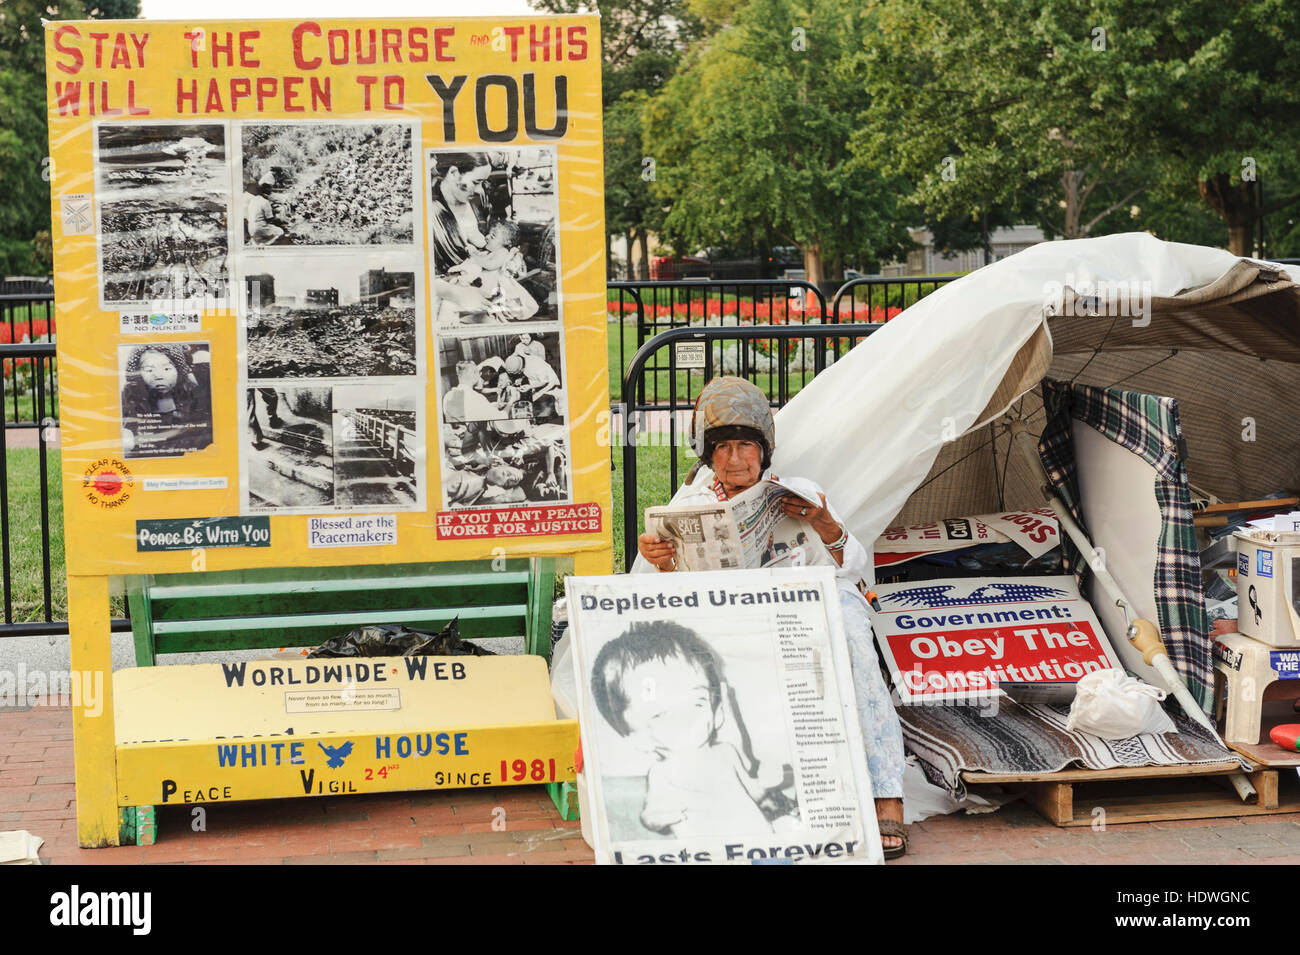 White House Peace Vigil, Concepcion Picciotto, un attivista della pace spagnolo che legge un giornale nel suo campo in Pennsylvania Ave., Washington, D.C. Foto Stock